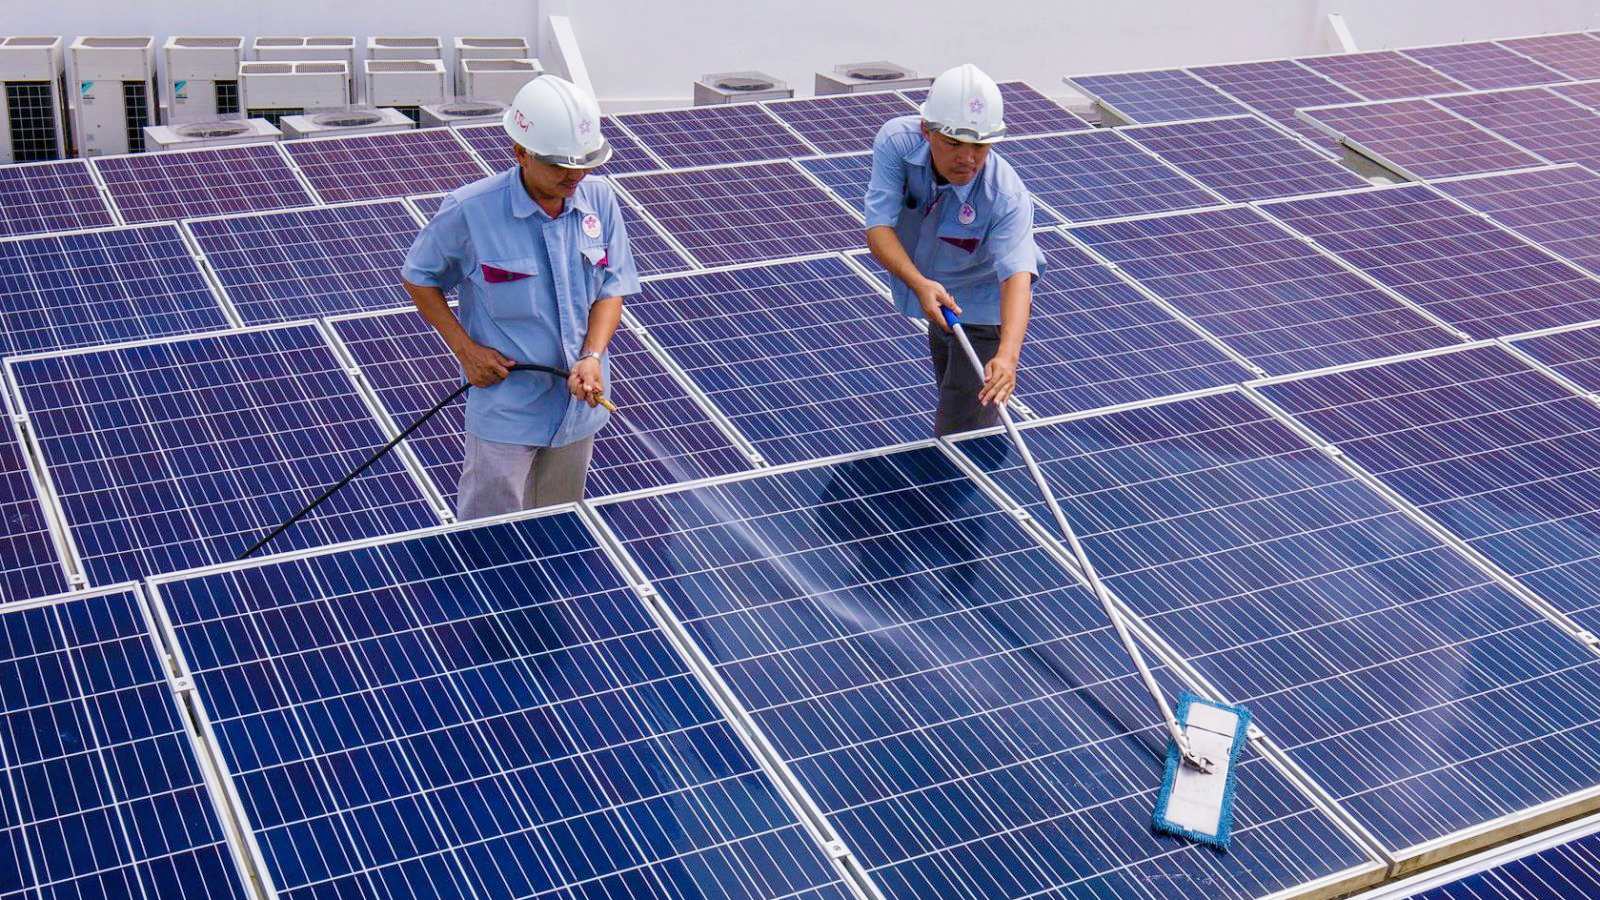 Bộ Công Thương đề xuất sản lượng điện mặt trời mái nhà tự sản tự tiêu nếu dôi dư được phát vào hệ thống điện quốc gia thì đơn vị điện lực ghi nhận sản lượng điện với giá 0 đồng và không được thanh toán